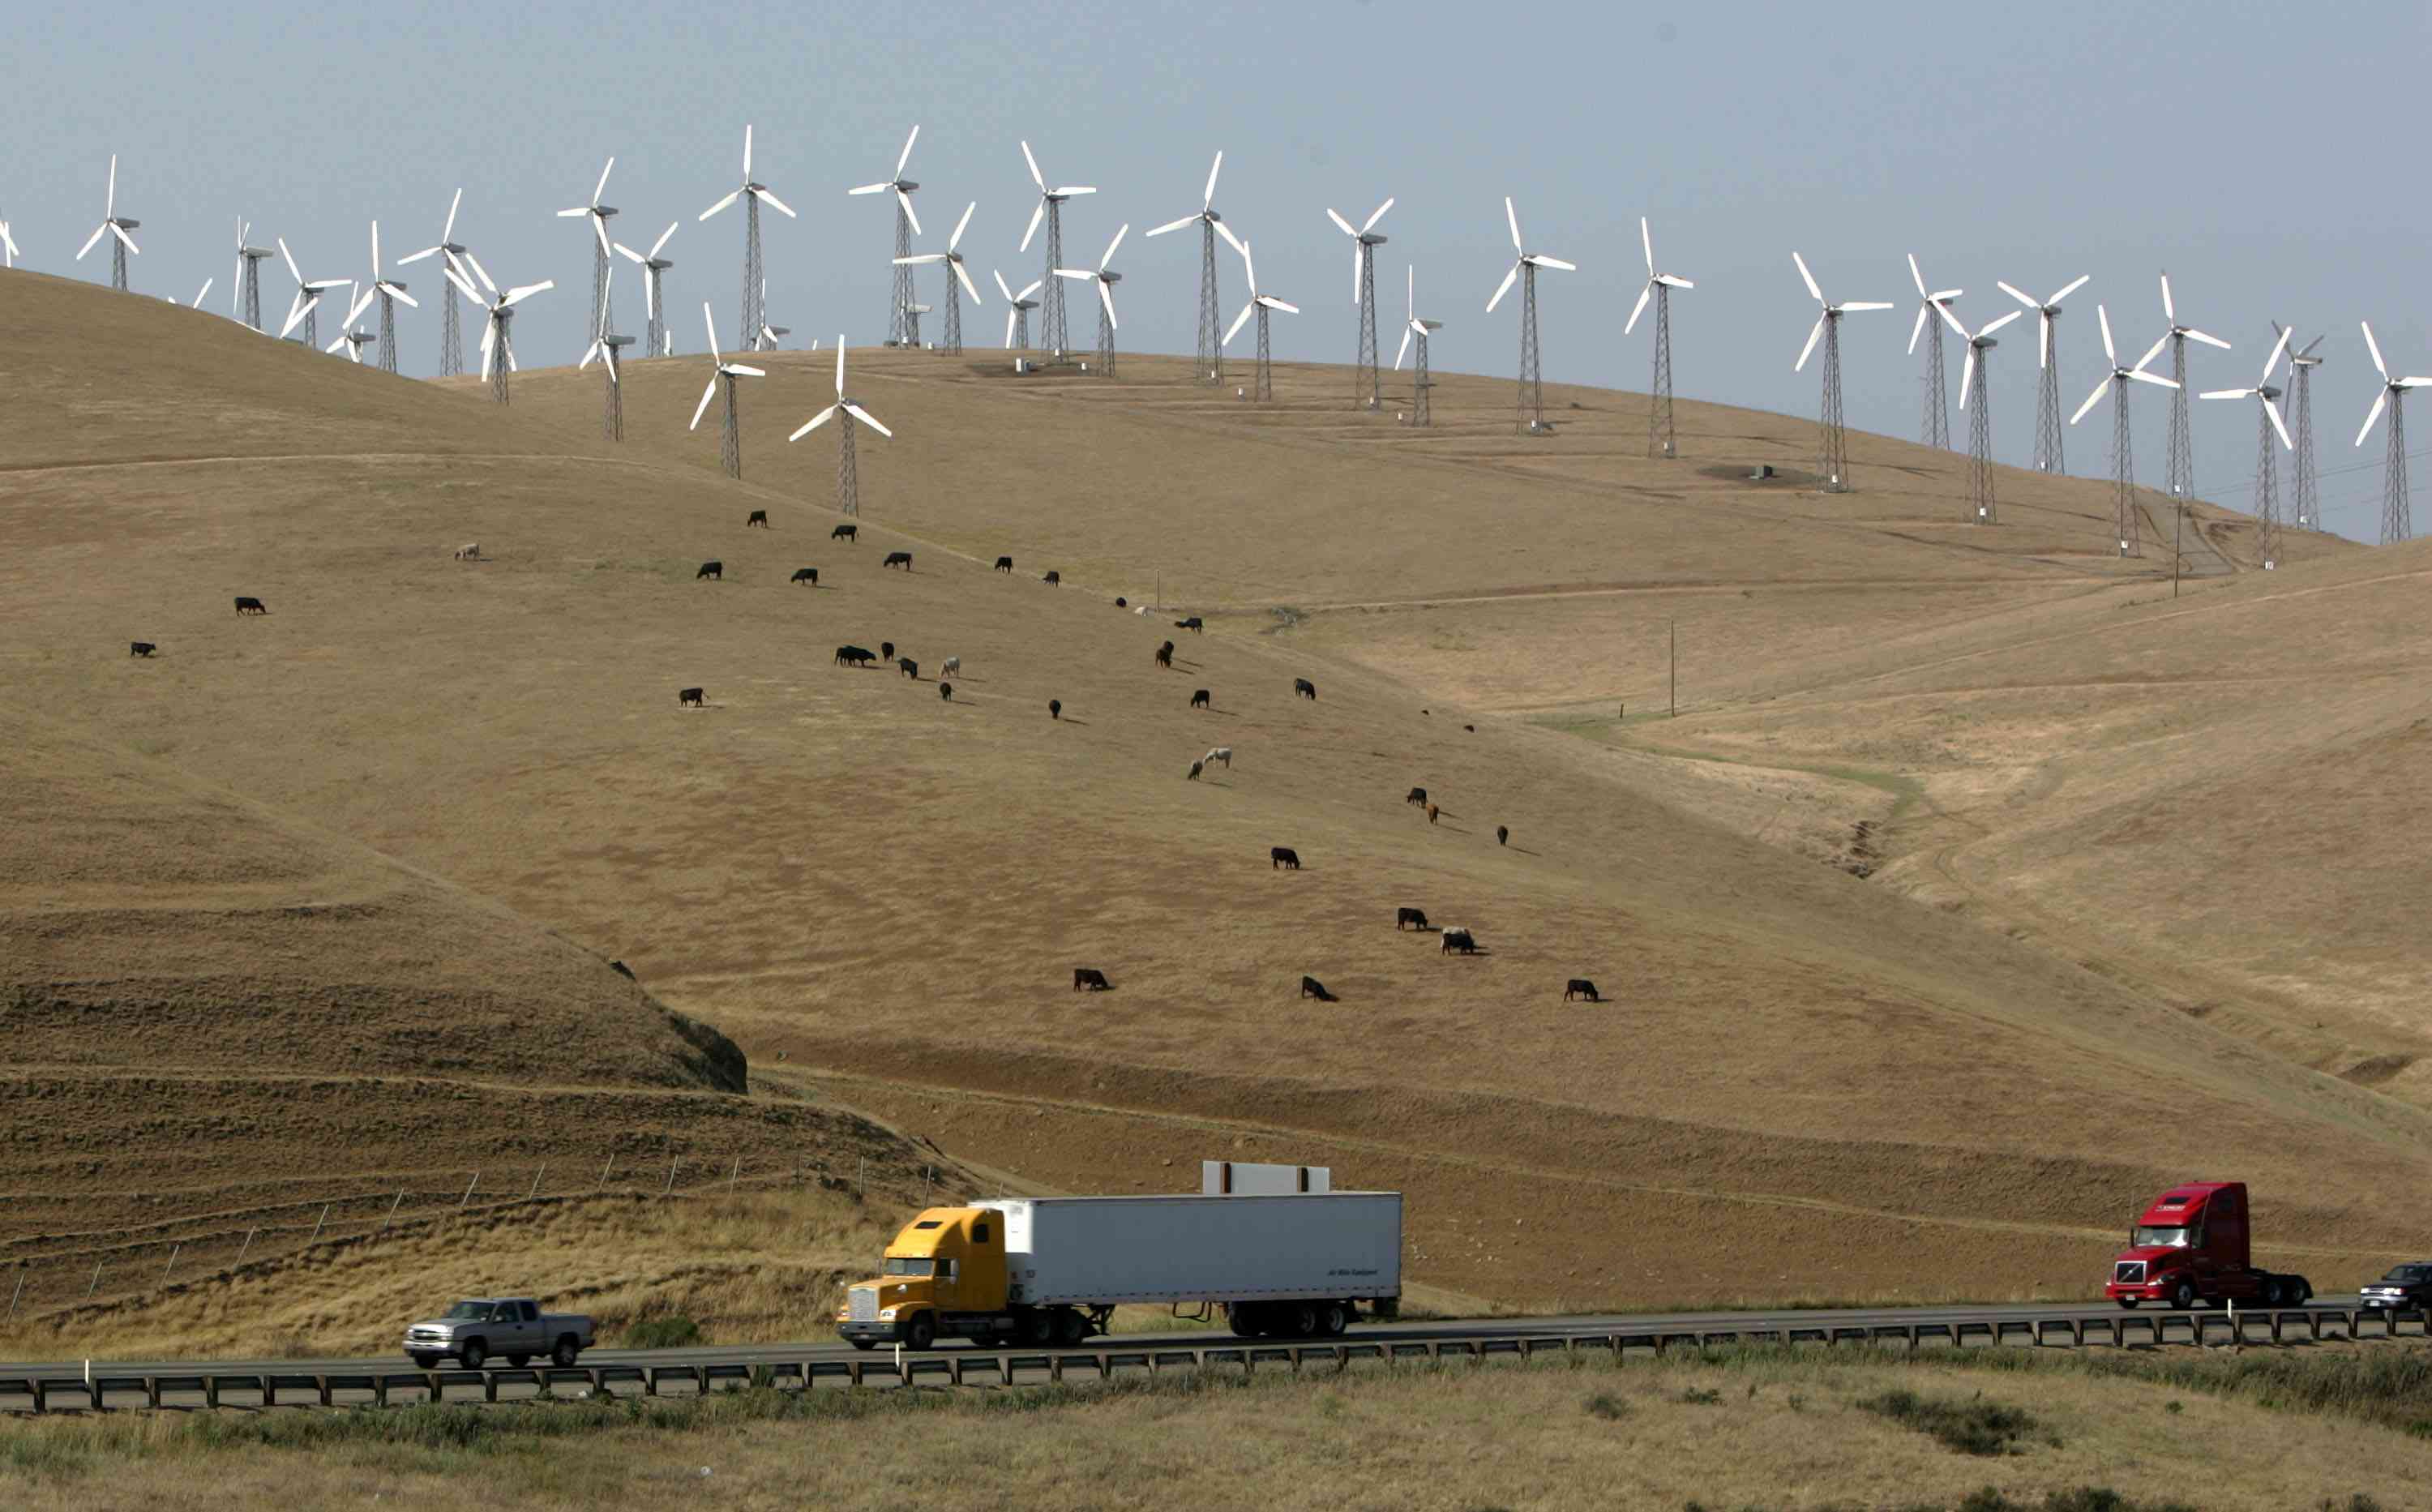 风力涡轮机帮助供应奥克兰的能源需求”width=